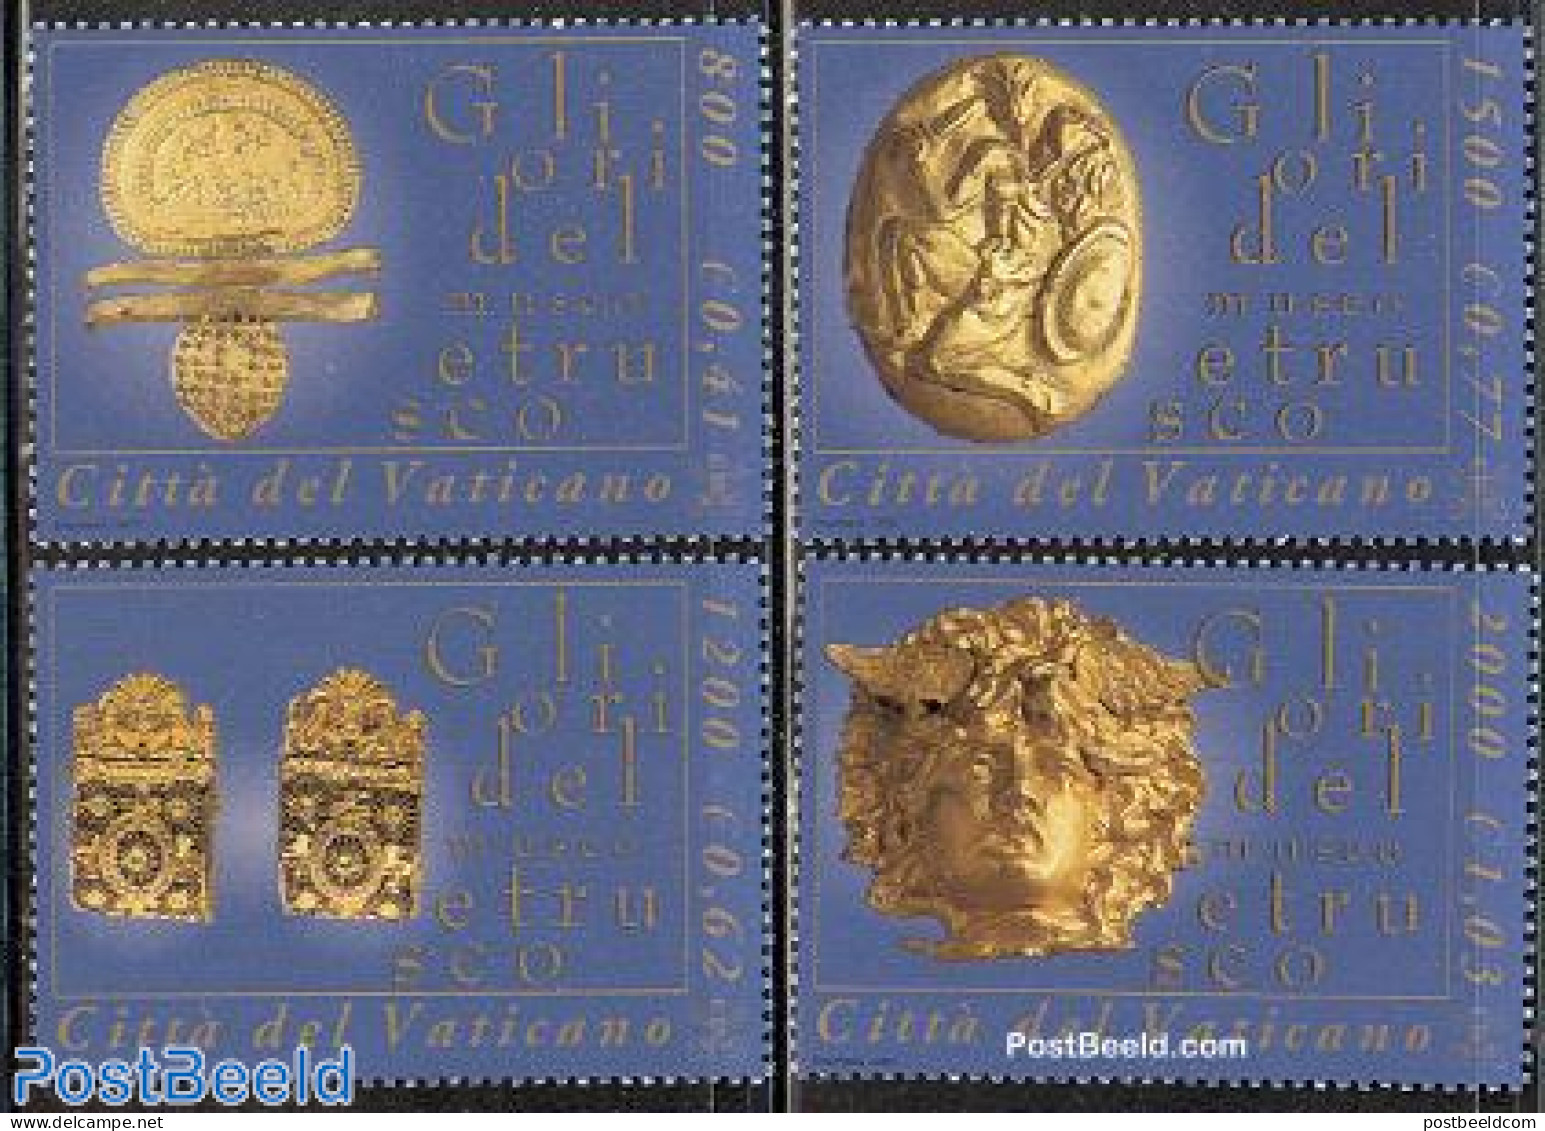 Vatican 2001 Etrusk Museum 4v, Mint NH, Art - Art & Antique Objects - Museums - Neufs